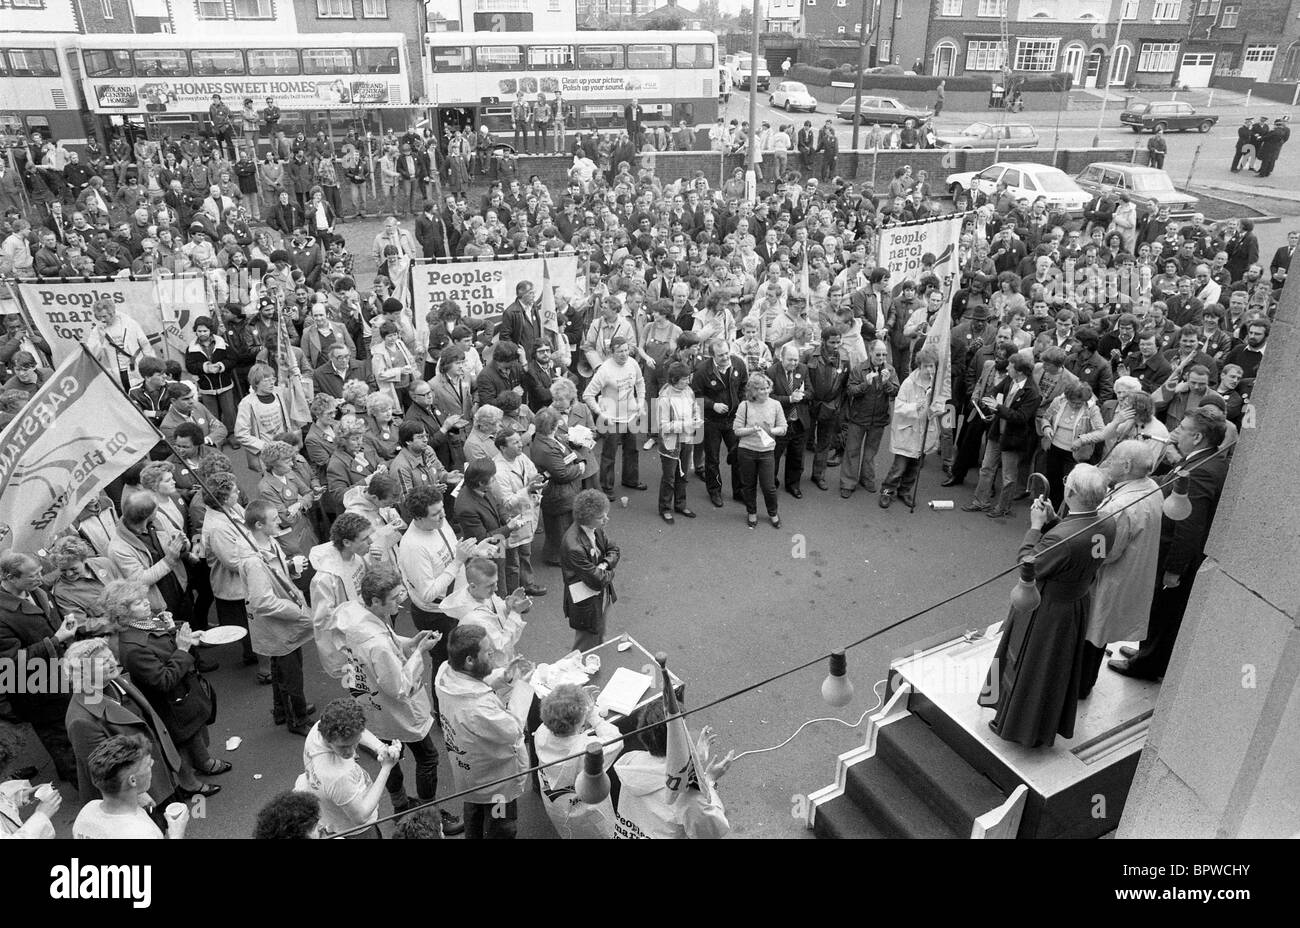 Écouter les marcheurs ont pris la parole lors de la Marche pour les peuples autochtones des emplois à Wolverhampton Bilston 20/5/83 Banque D'Images